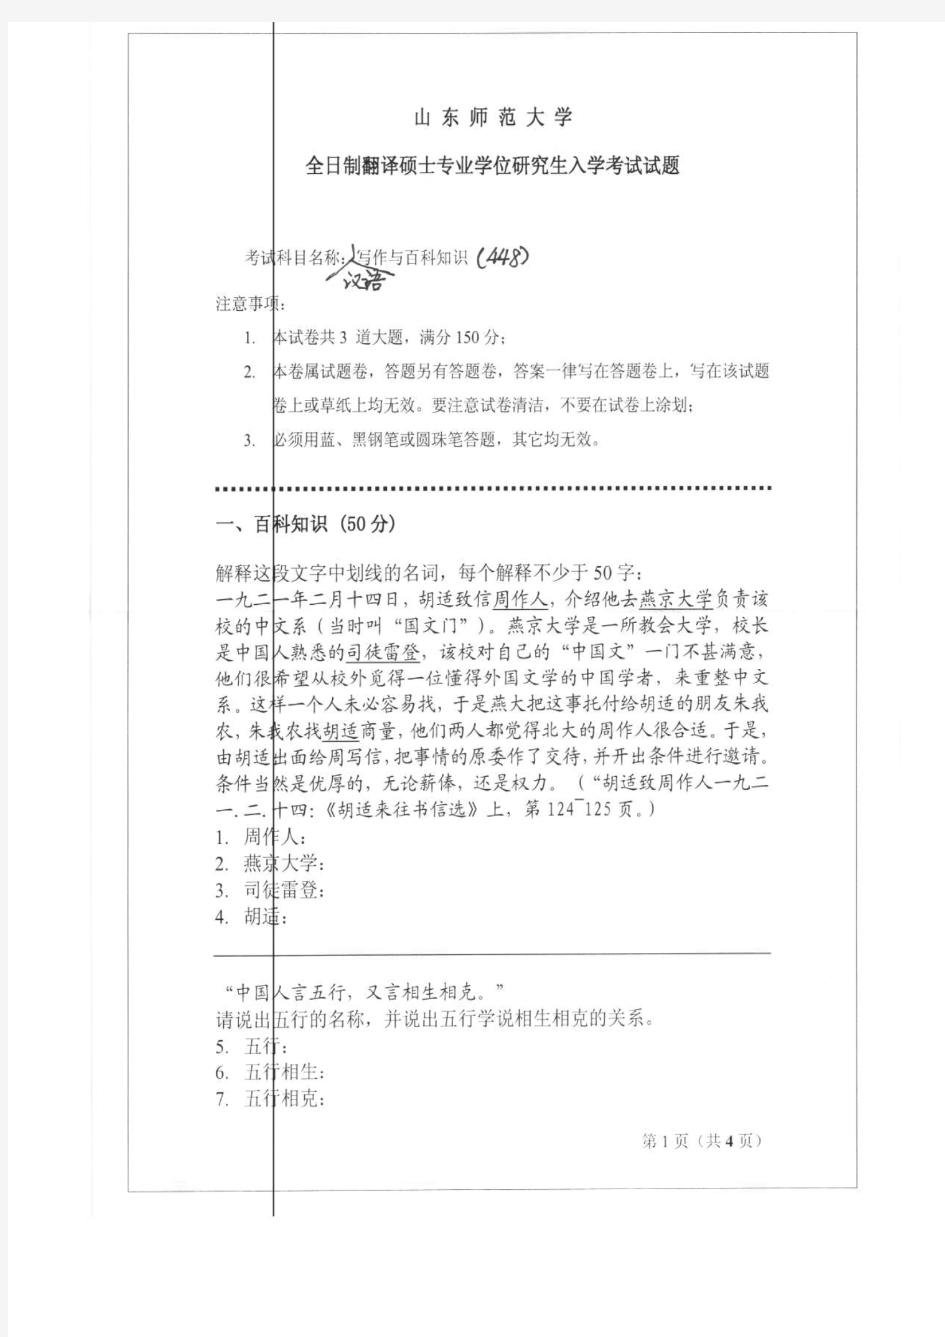 山东师范大学2011年《448汉语写作与百科知识》考研专业课真题试卷